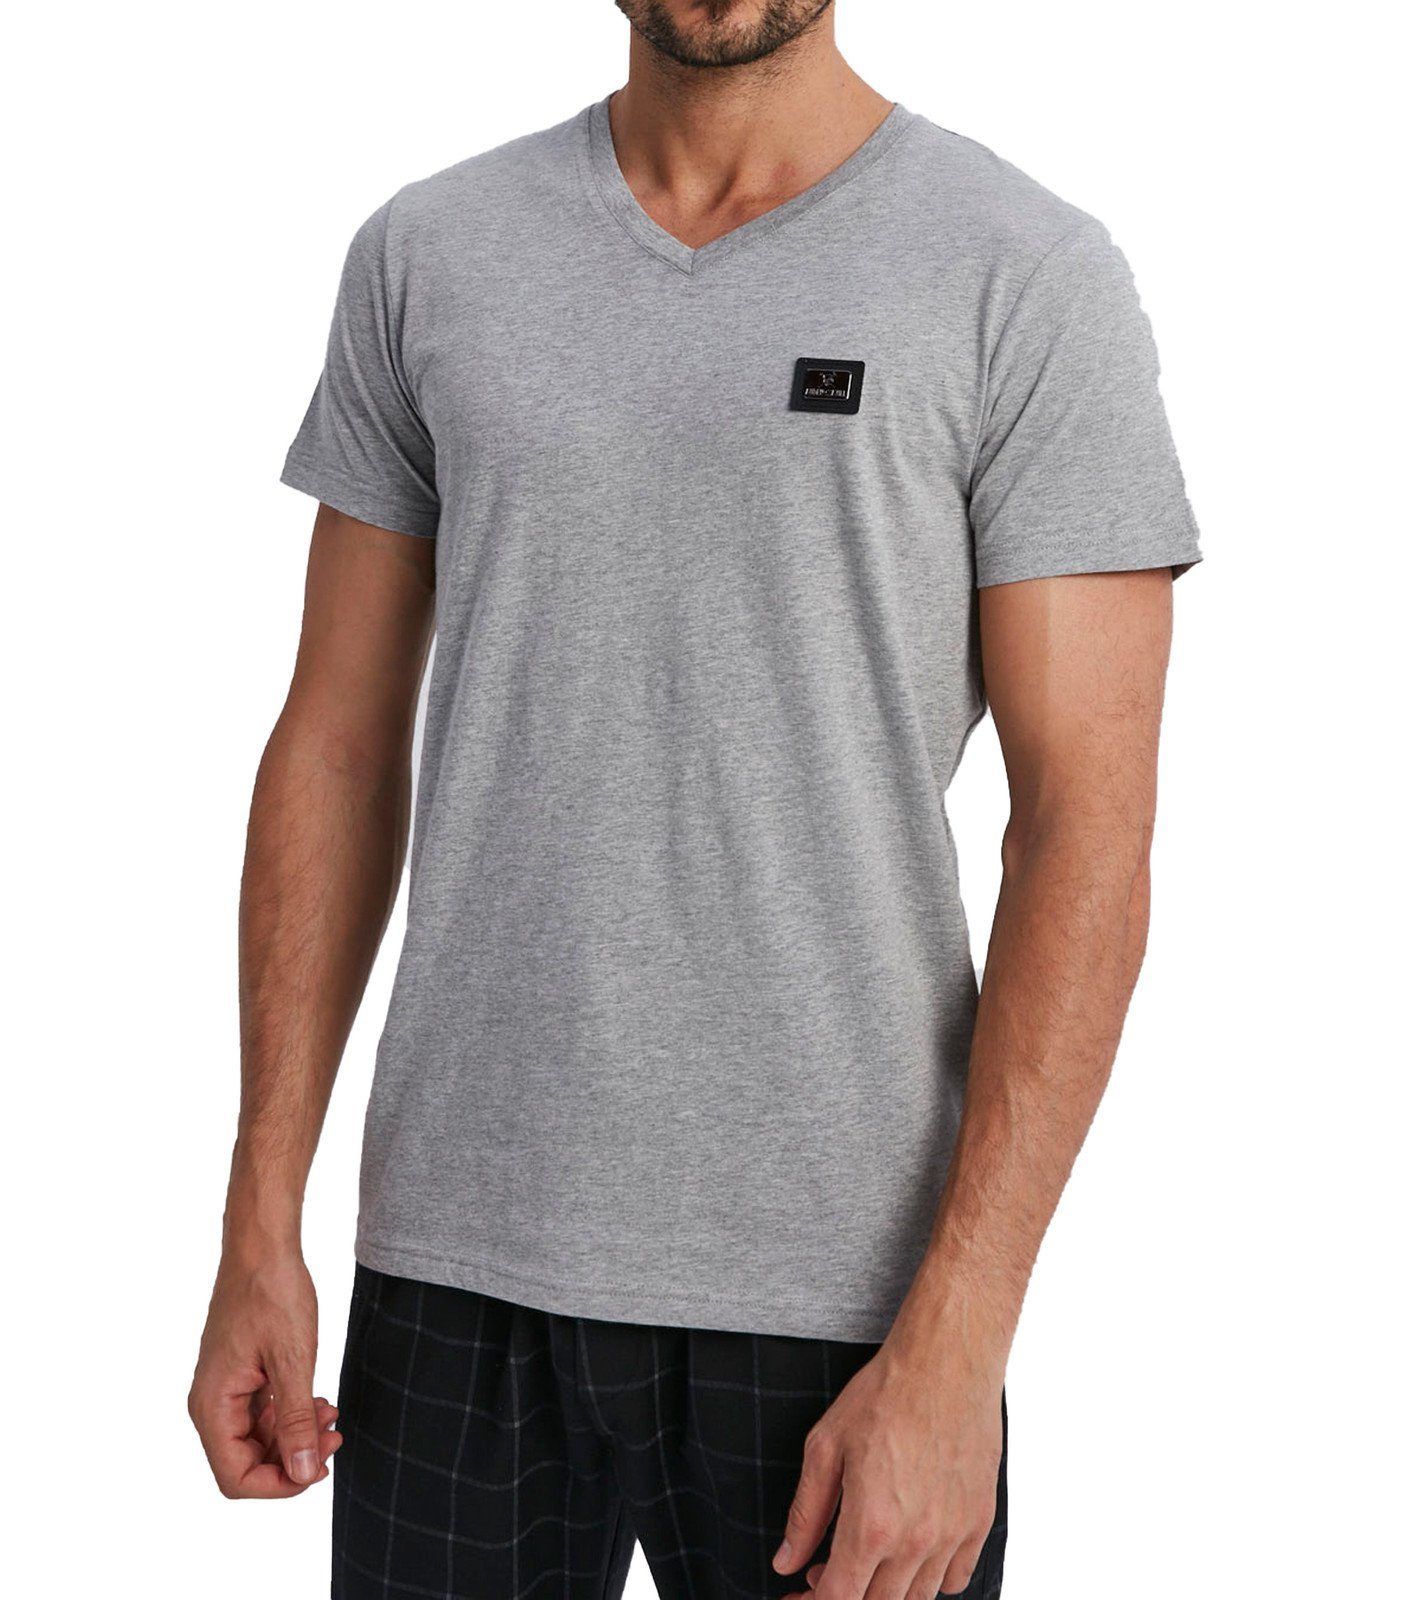 Rundhalsshirt AUDEN CAVILL Herren Freizeit-Shirt V-Neck T-Shirt Canyon Kurzarm-Shirt Grau